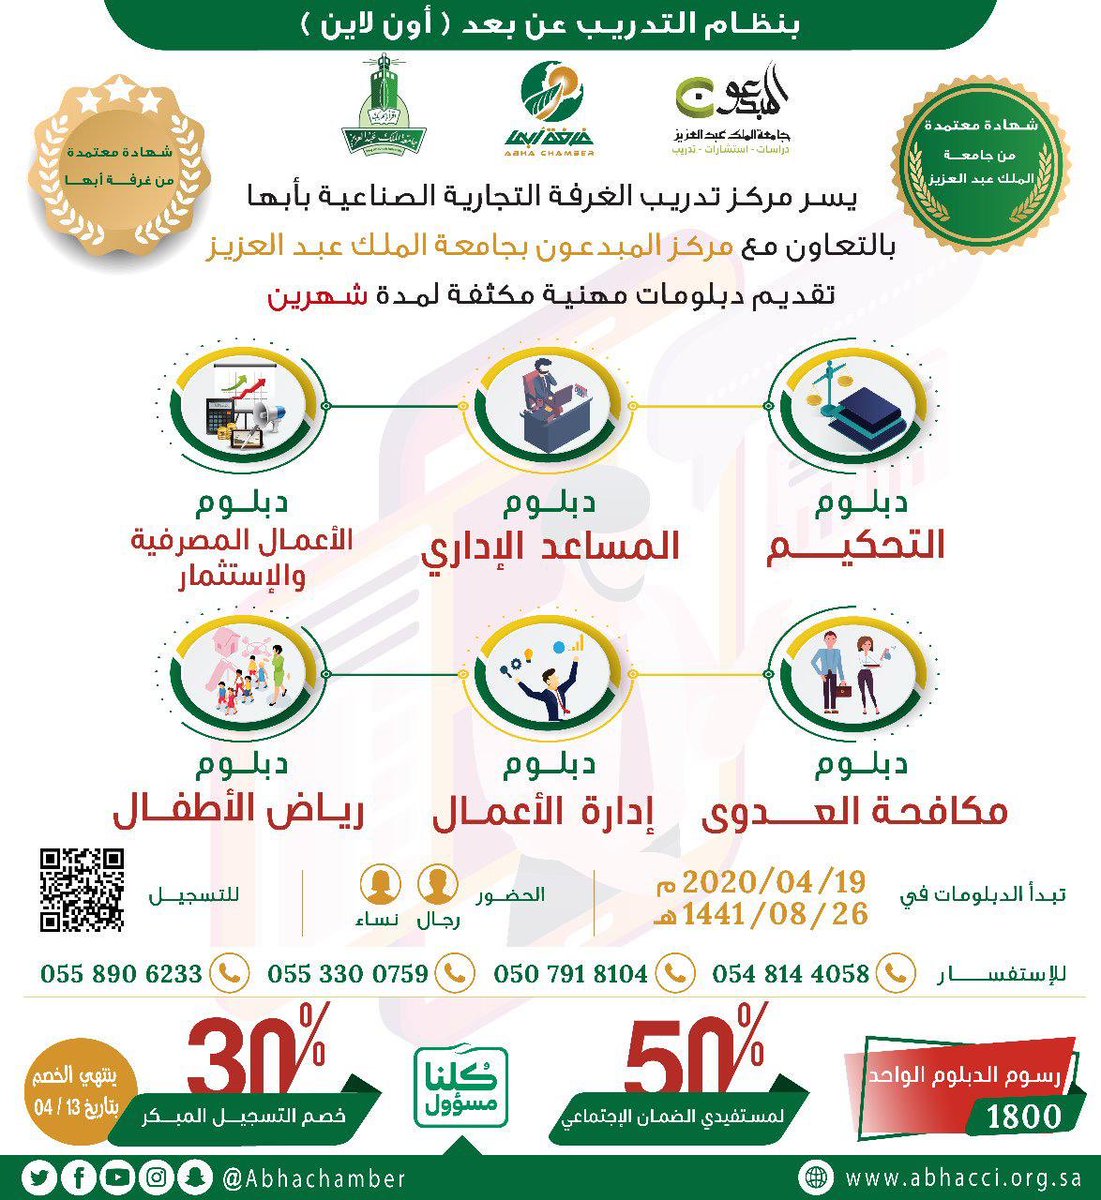 دبلومات مهنية معتمدة من جامعة الملك عبدالعزيز